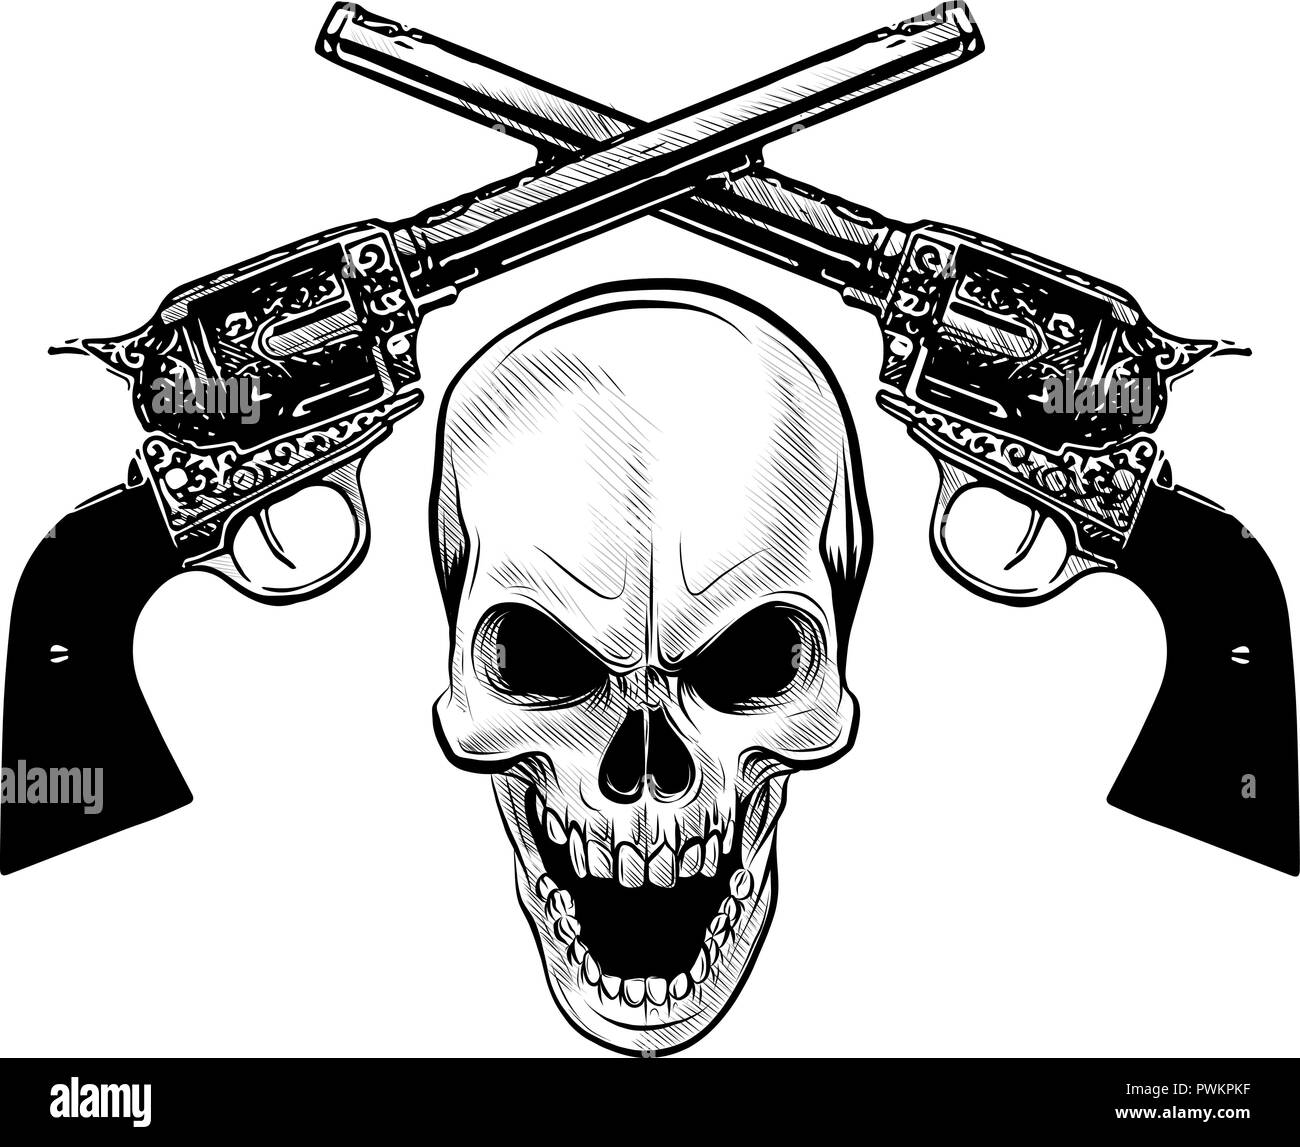 Escudo de armas militares con cráneo grunge, camisetas de diseño. Ilustración del Vector